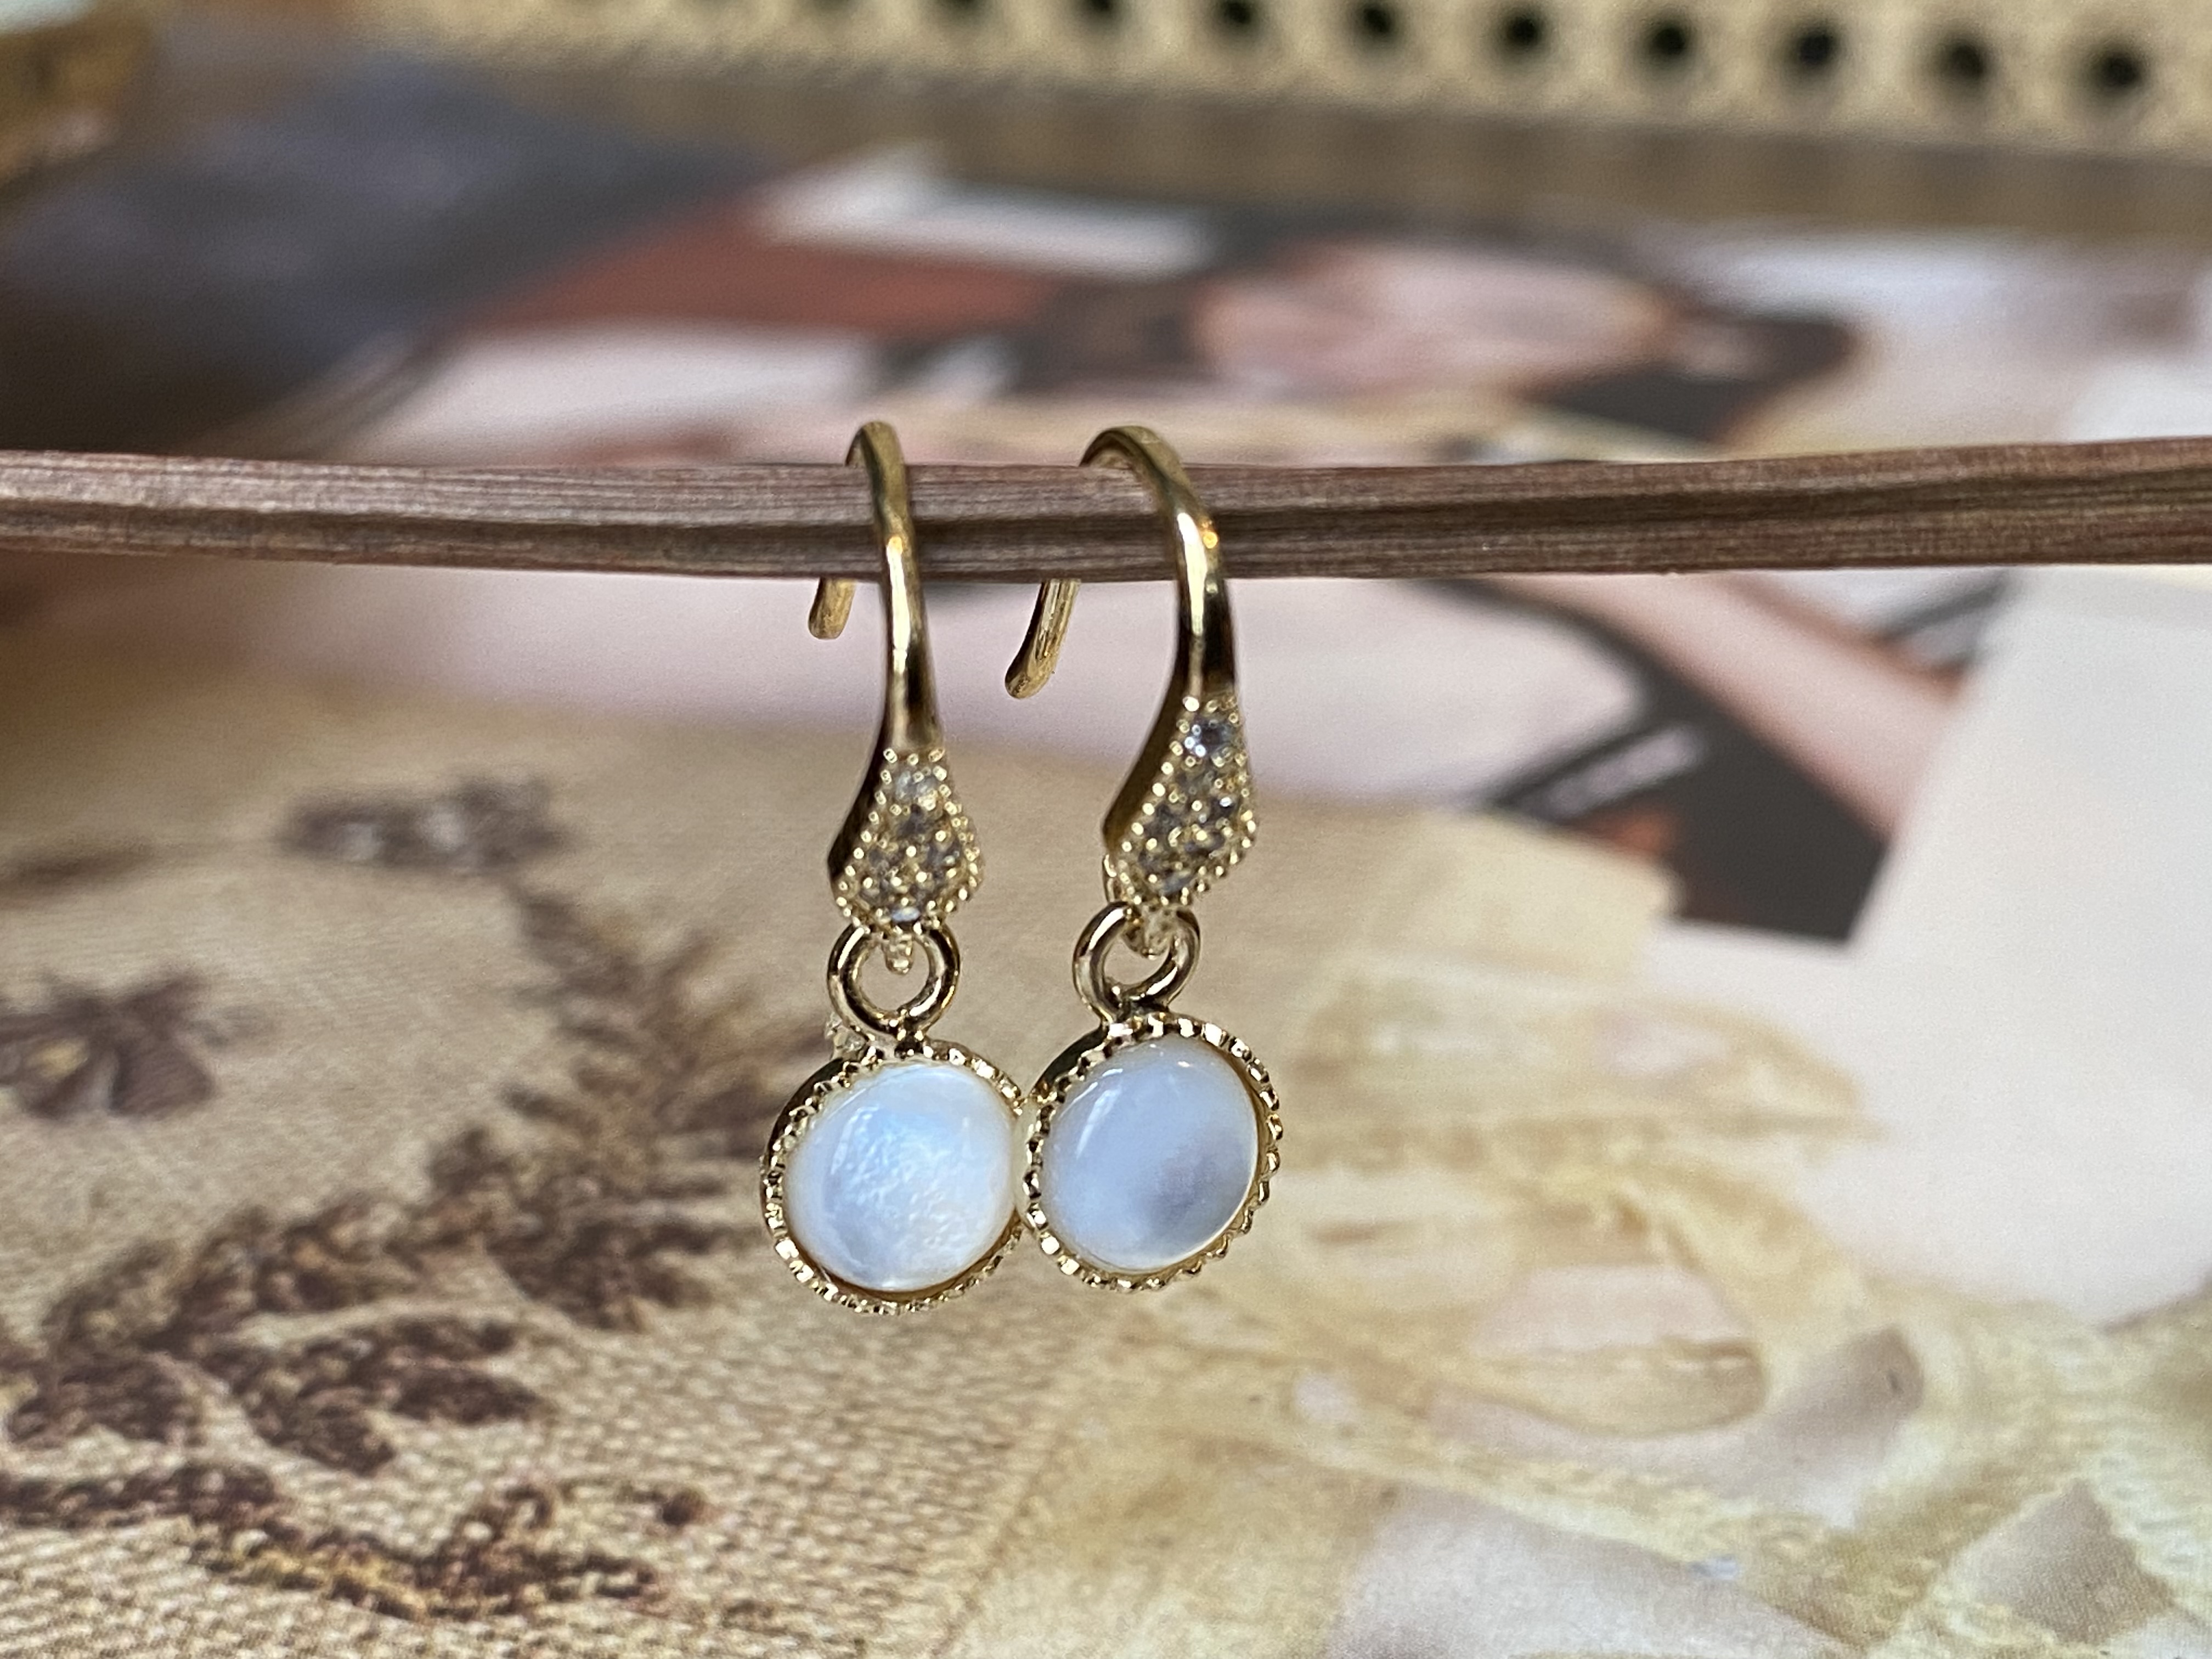 Boucles d'oreilles en nacre blanche - Dolita select store de bijoux  fantaisie